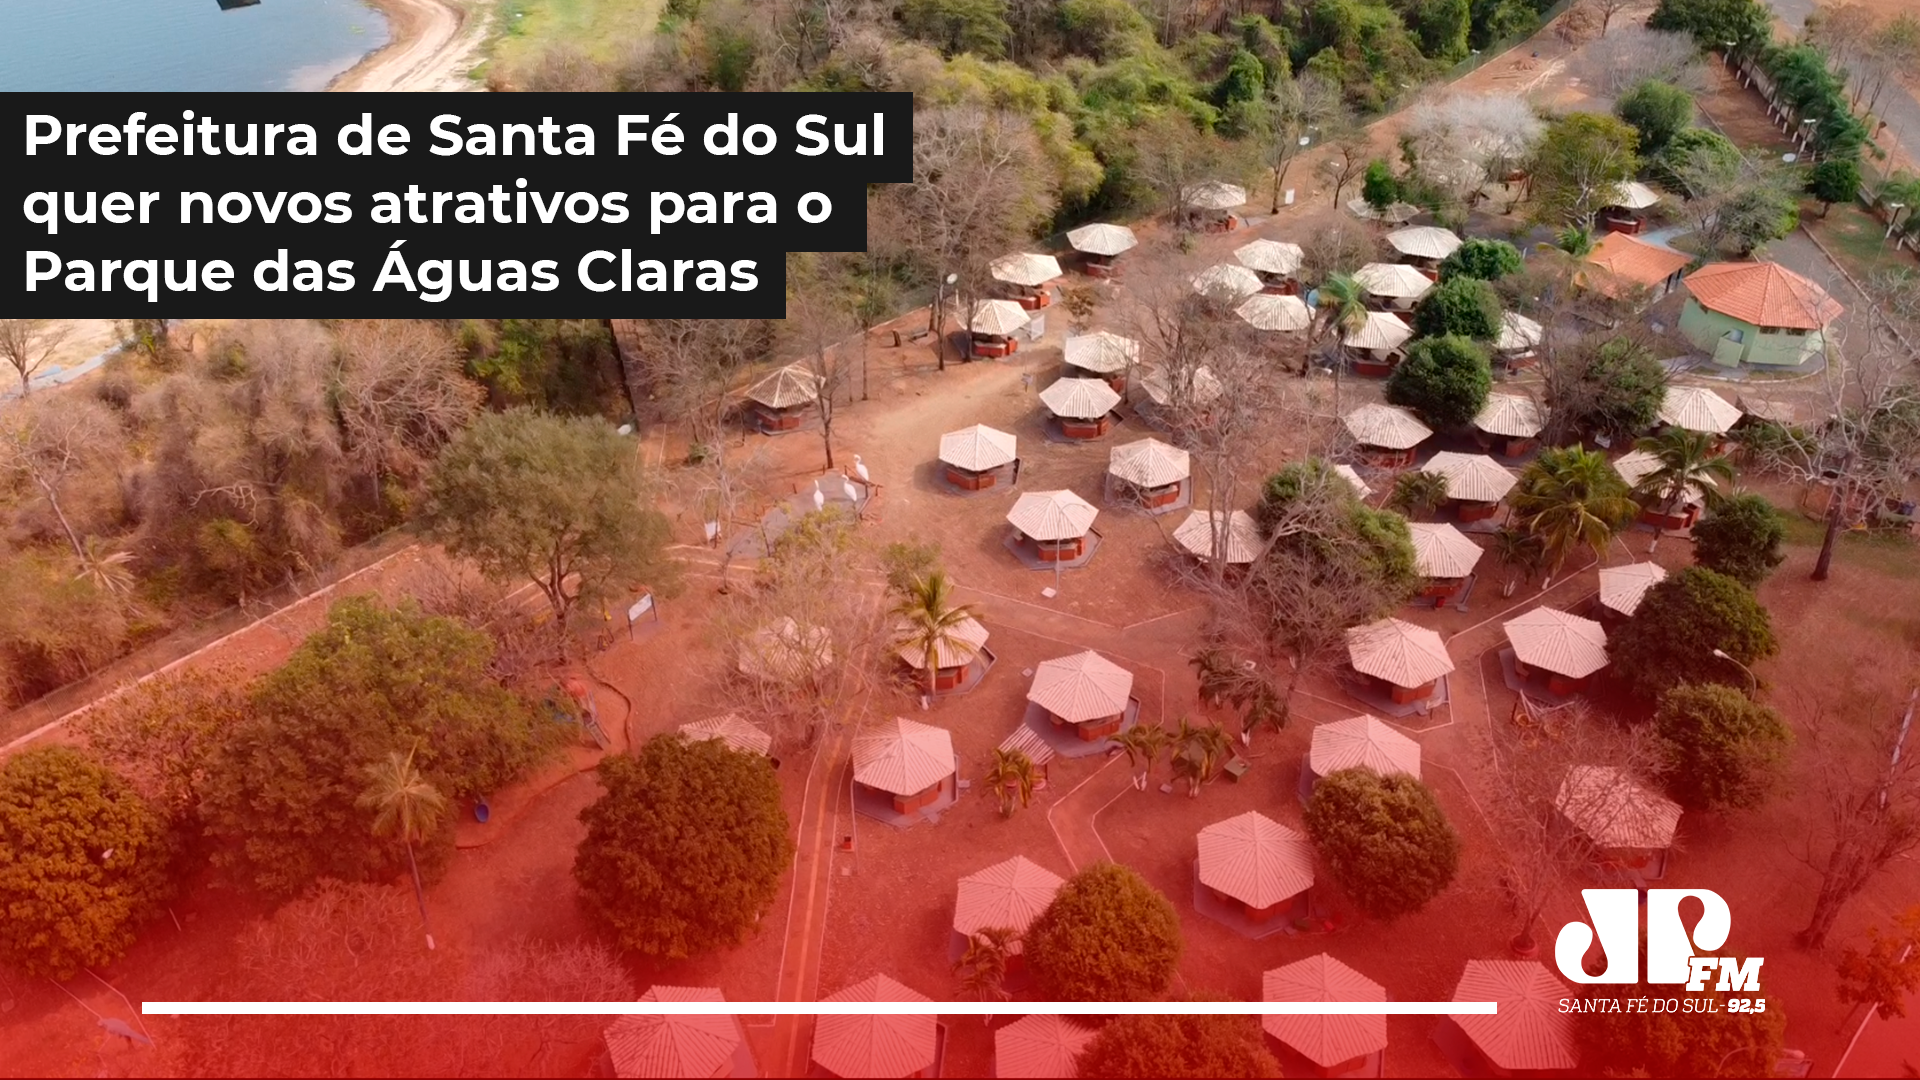 Prefeitura de Santa Fé do Sul quer novos atrativos para o Parque das Águas Claras com entrada gratuita